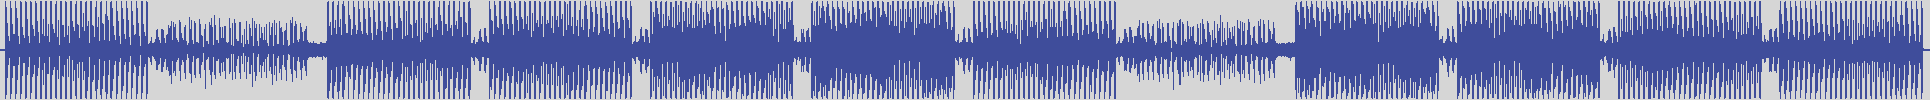 nf_boyz_records [NFY062] Robert Rex - Serenely [Jazz & Deep Mix] audio wave form